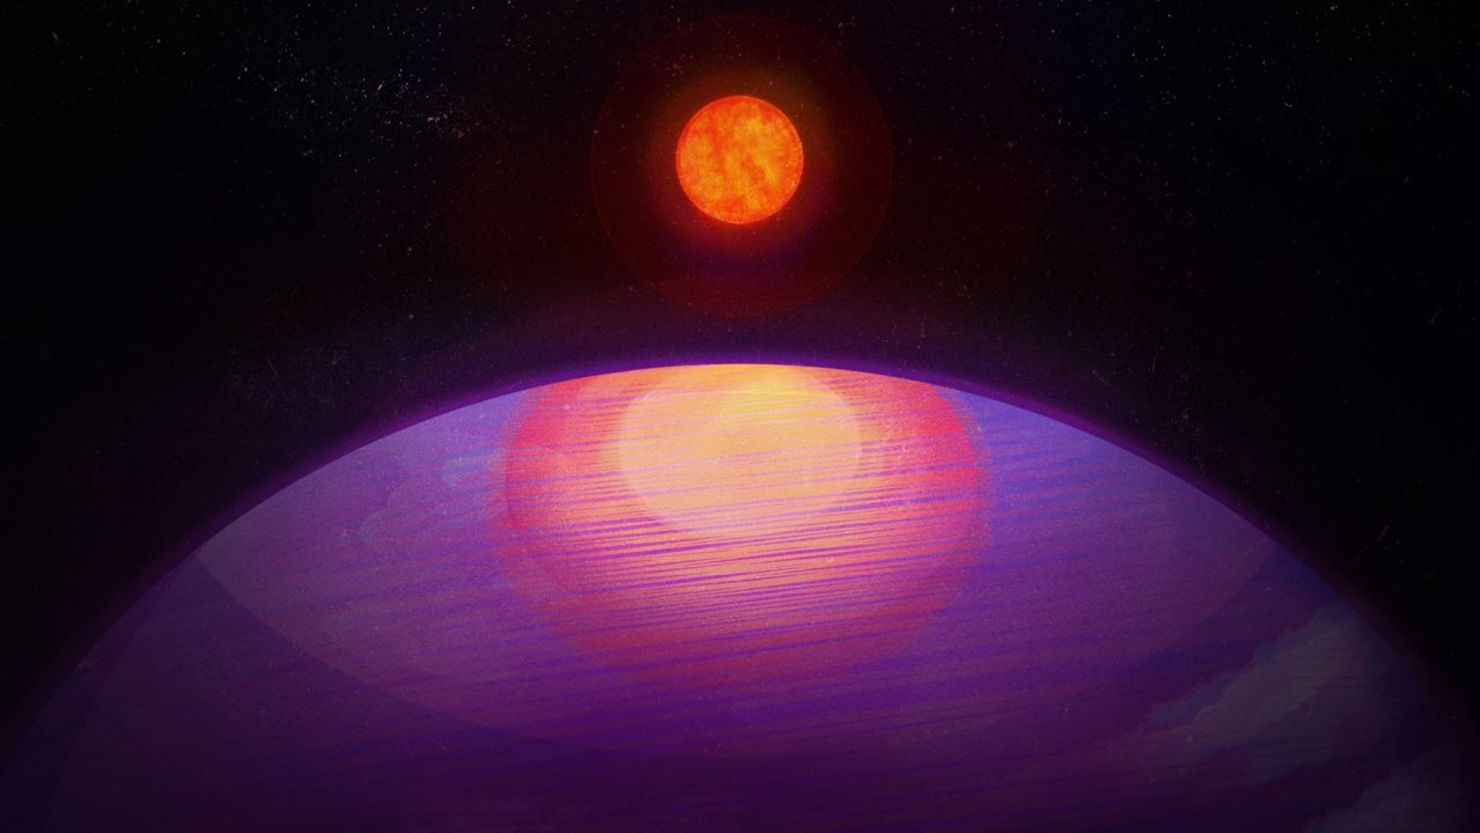 Una ilustración artística muestra la posible imagen de un planeta orientado hacia su estrella anfitriona de baja masa. El planeta, bautizado como LHS 3154b, tiene probablemente una composición similar a Neptuno.